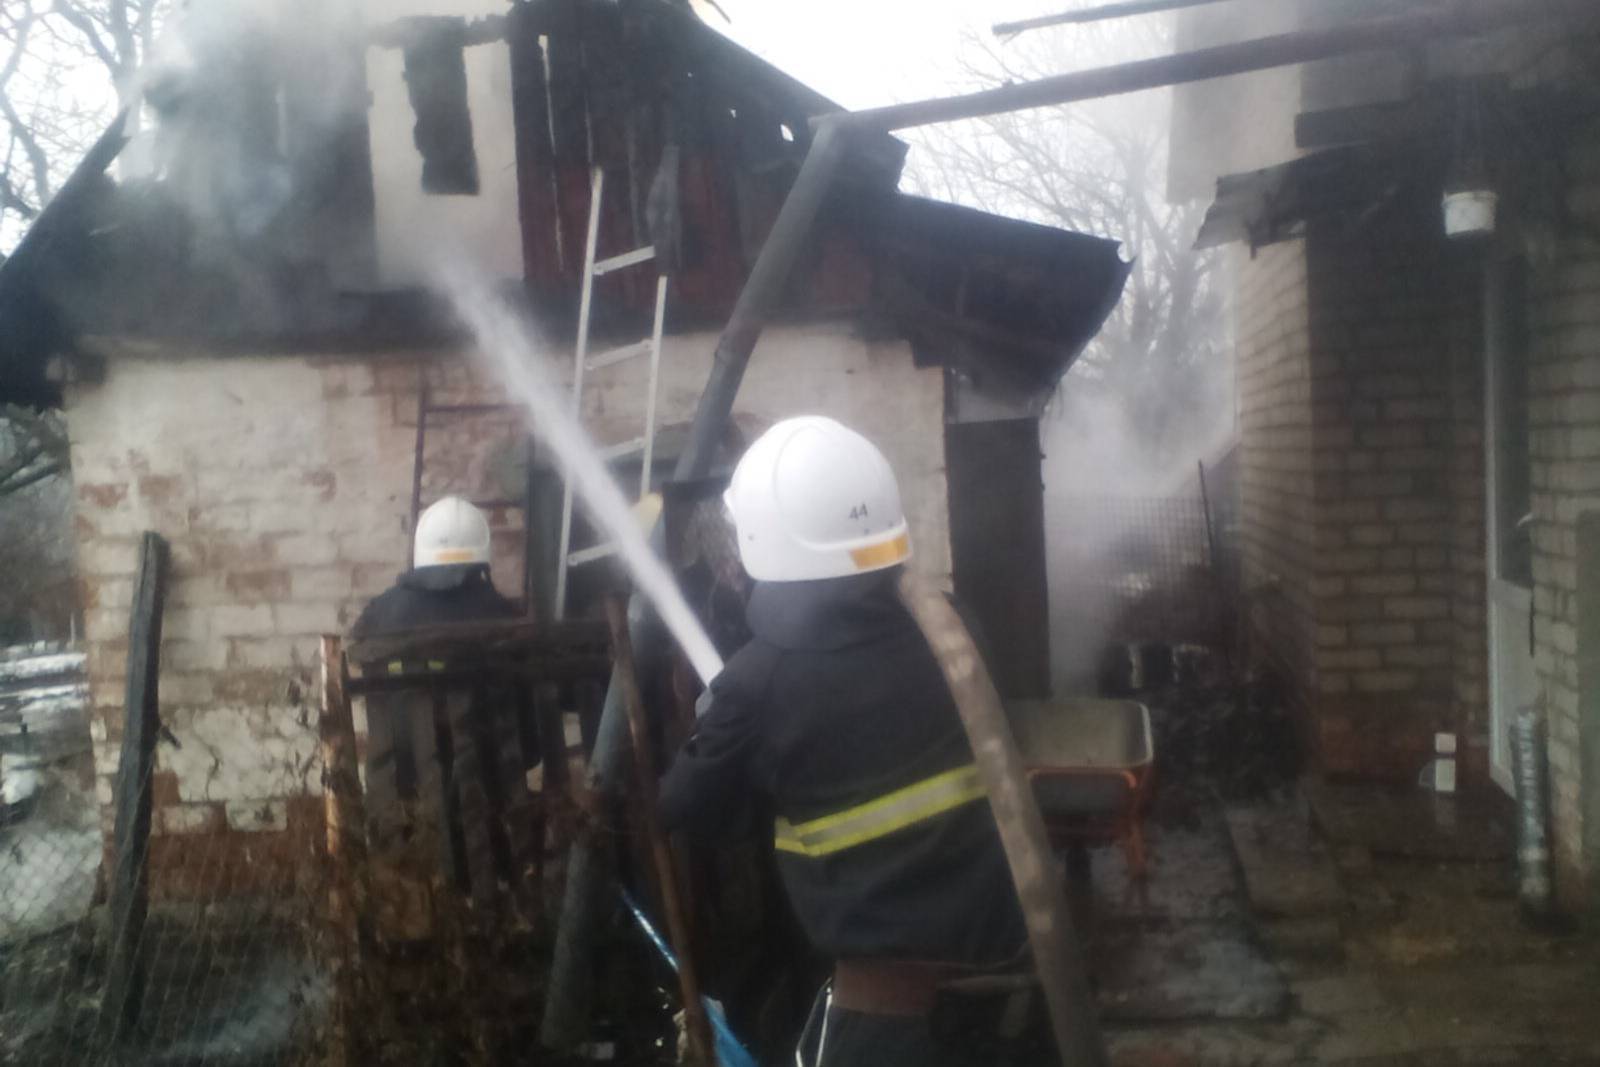 Харківська область: на території приватного домоволодіння трапилась пожежа через неправильну експлуатацію печі